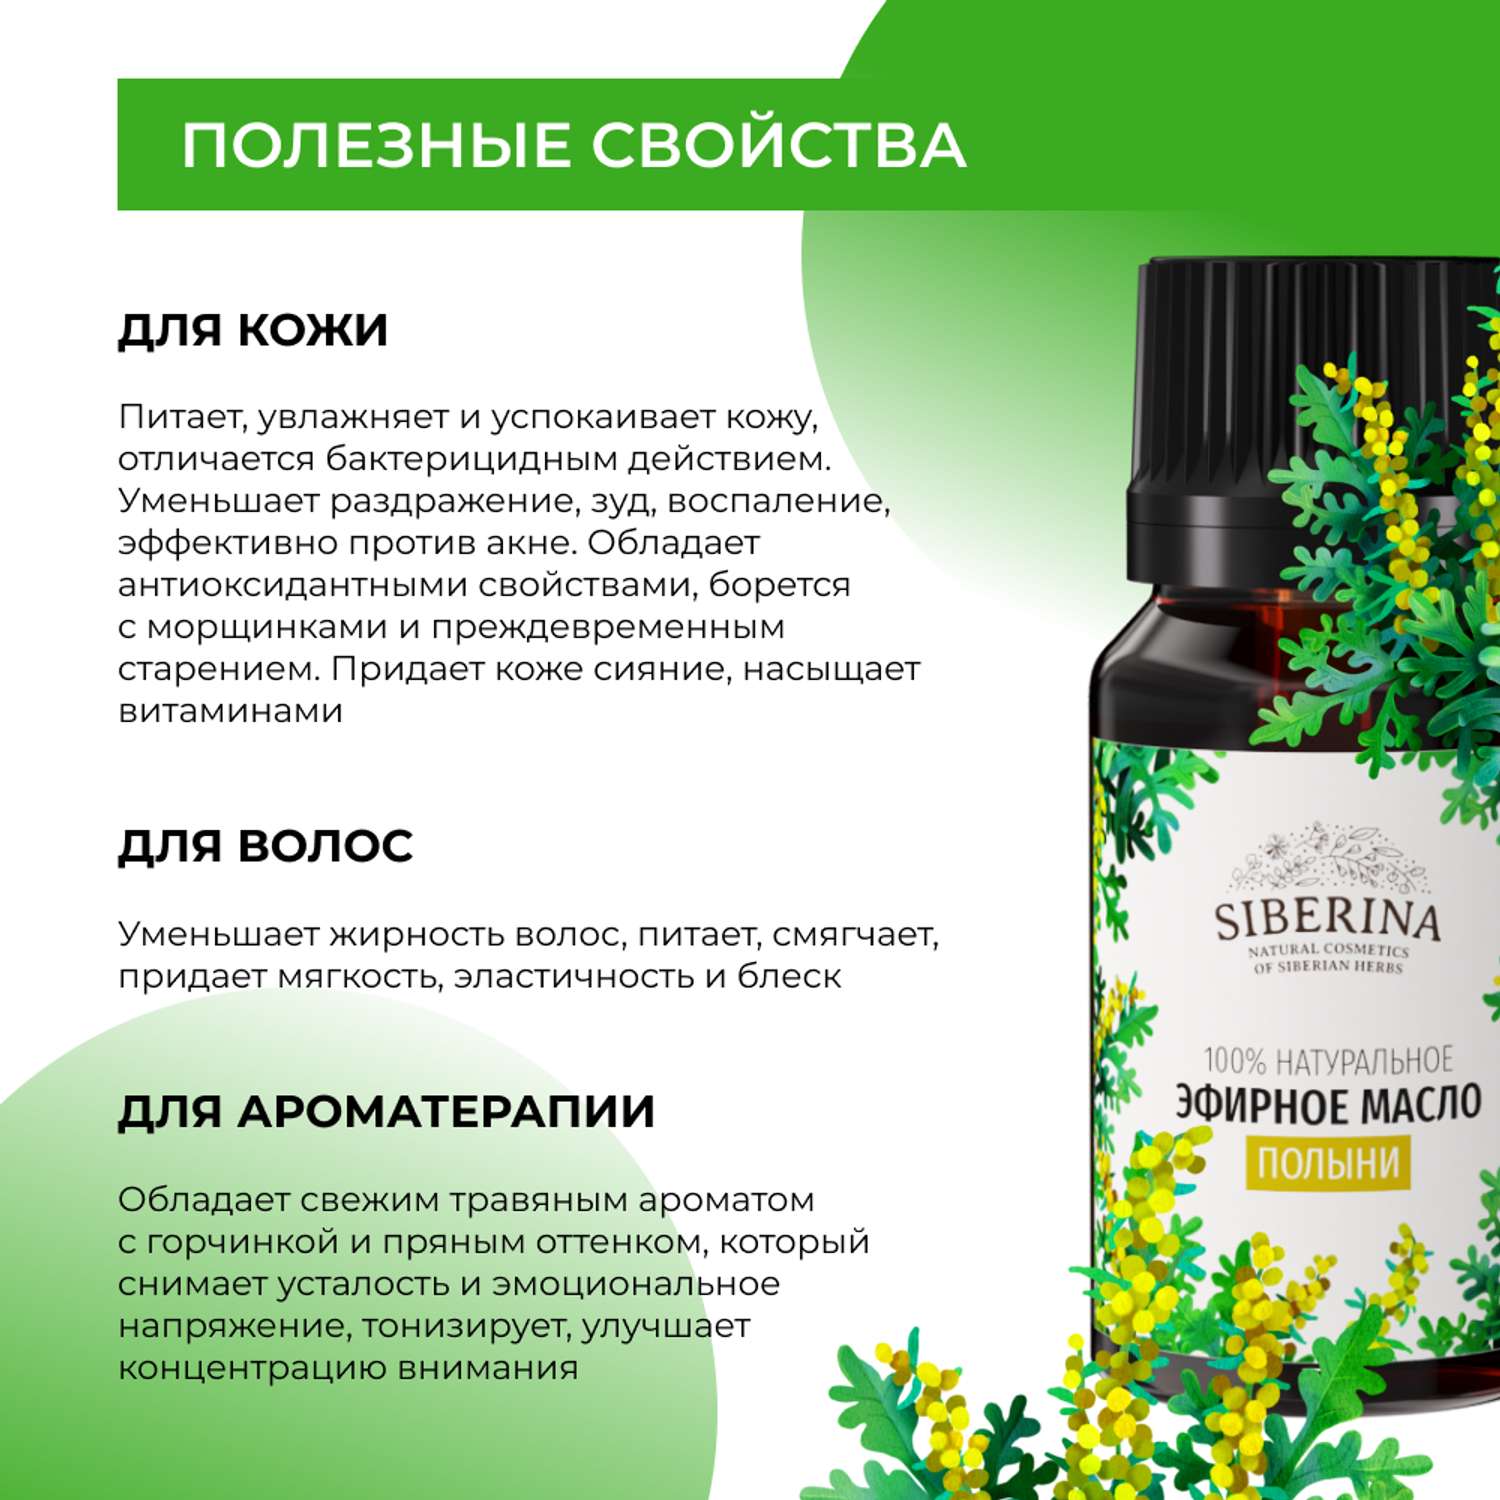 Эфирное масло Siberina натуральное «Полыни» для тела и ароматерапии 8 мл - фото 4